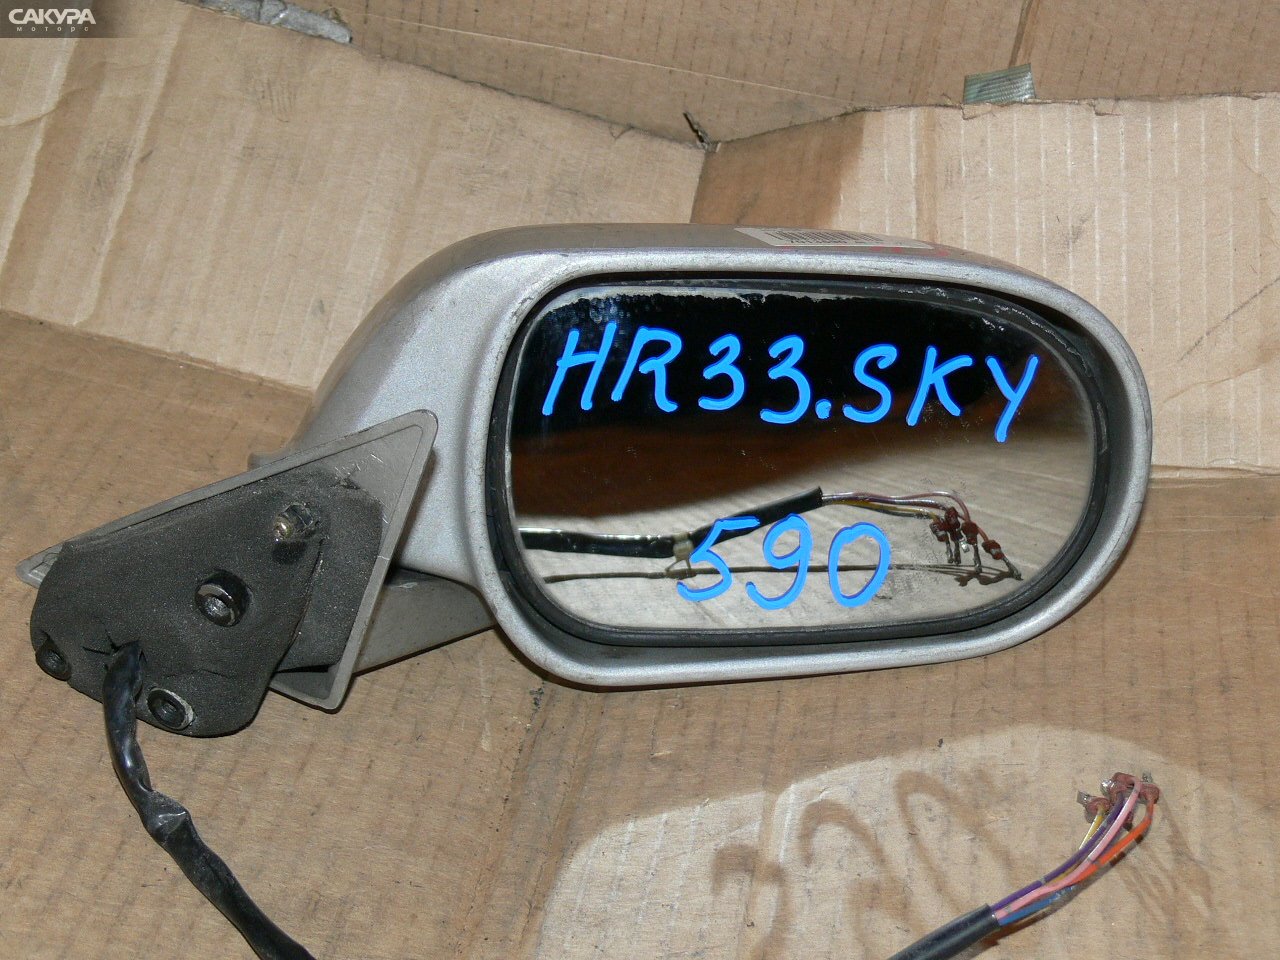 Зеркало боковое правое Nissan Skyline HR33: купить в Сакура Иркутск.